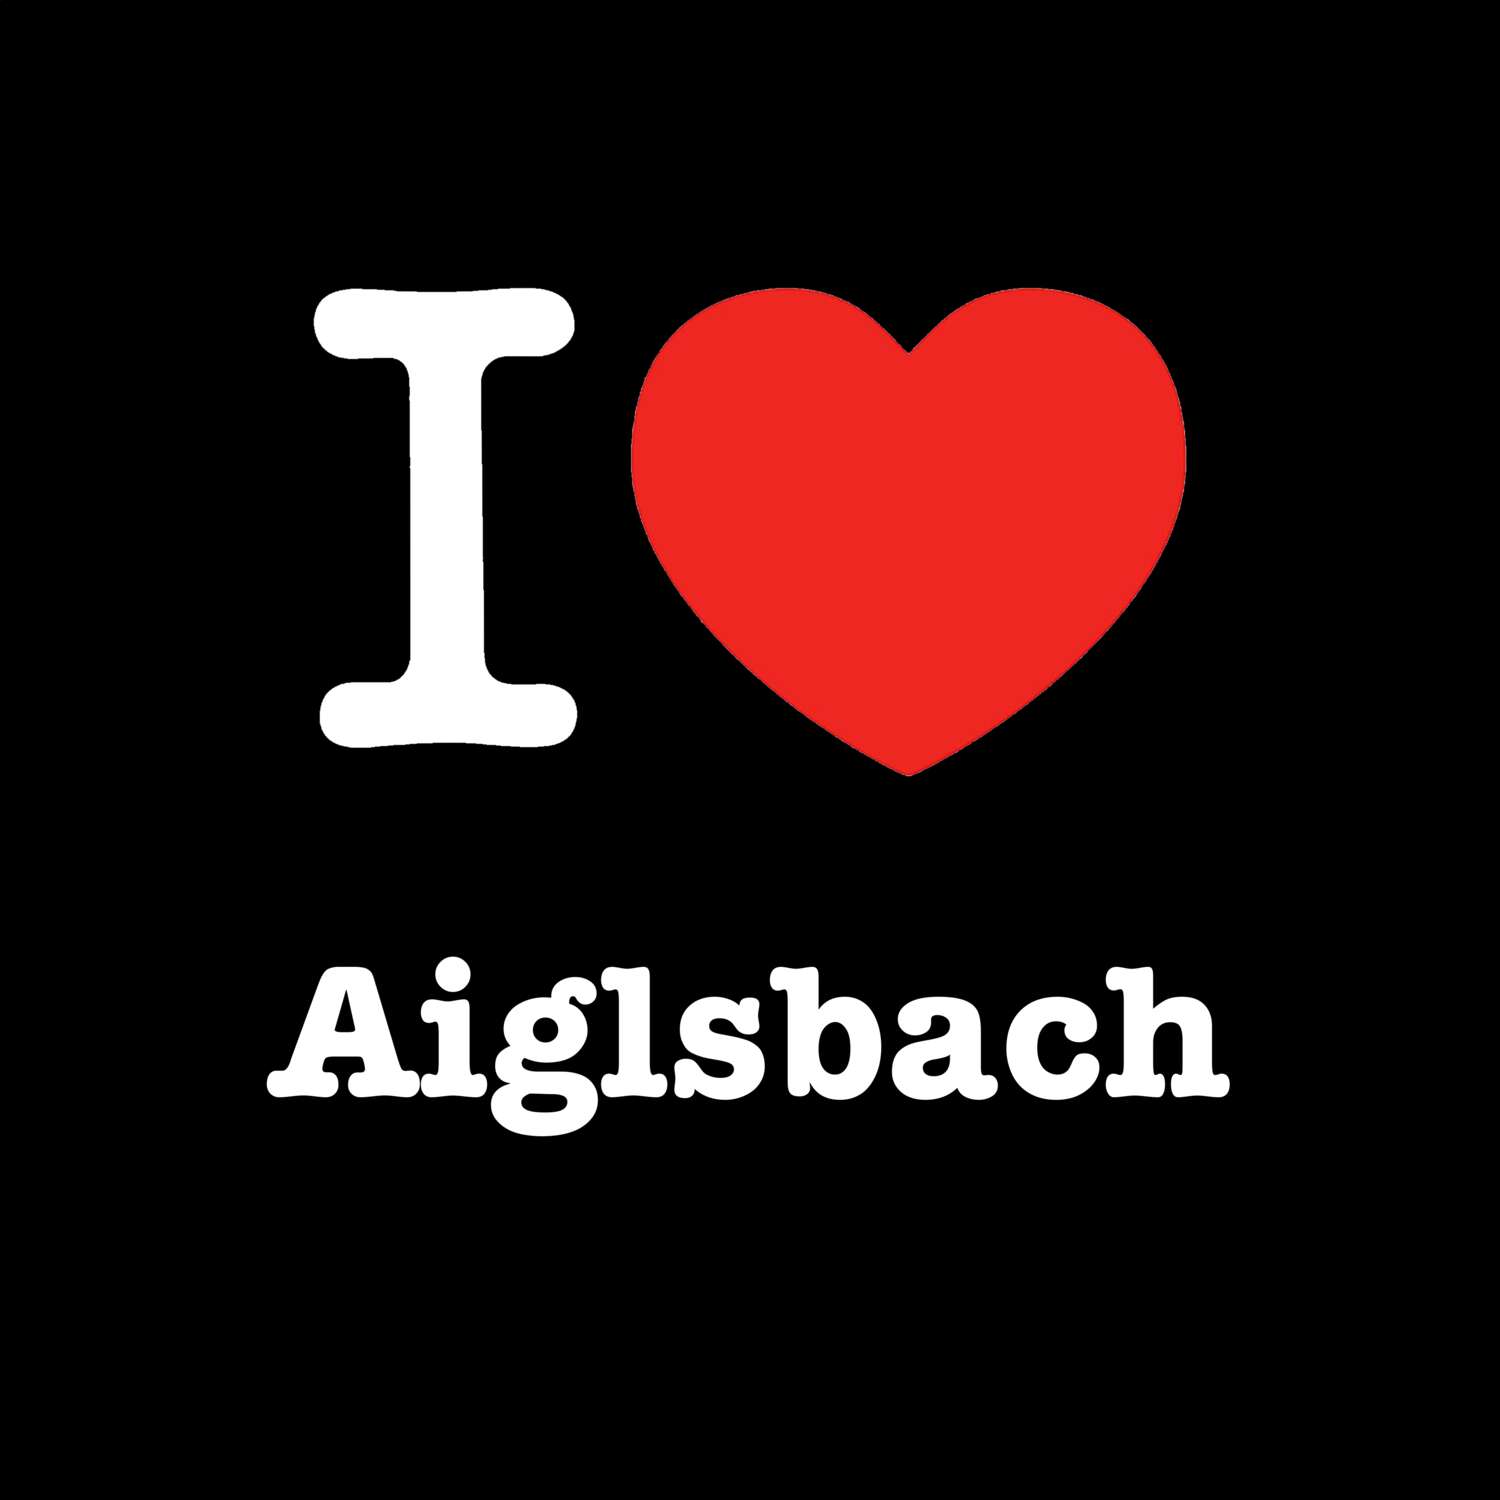 Aiglsbach T-Shirt »I love«